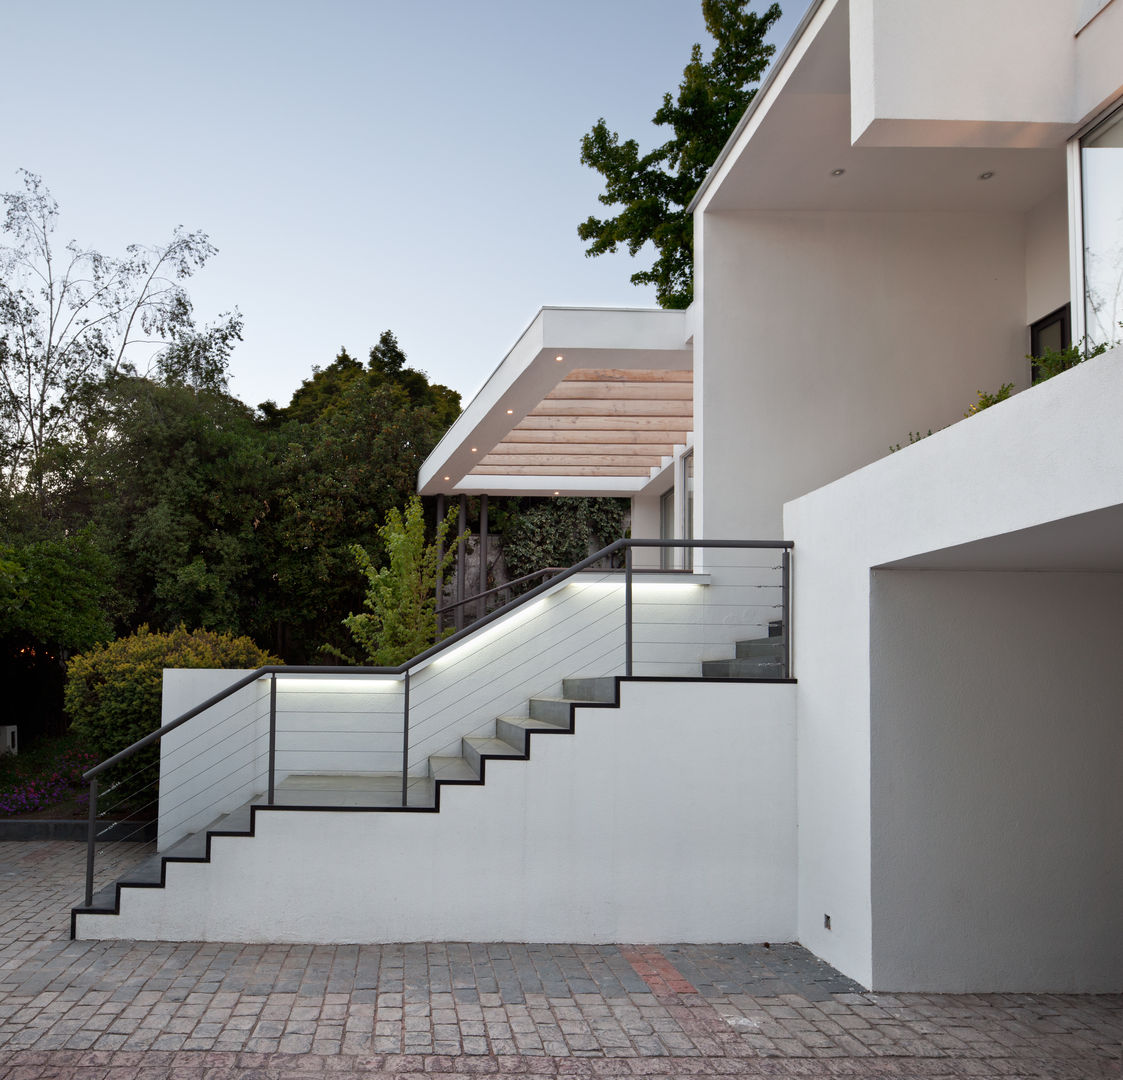 Acceso principal a la casa [ER+] Arquitectura y Construcción Pasillos, halls y escaleras minimalistas